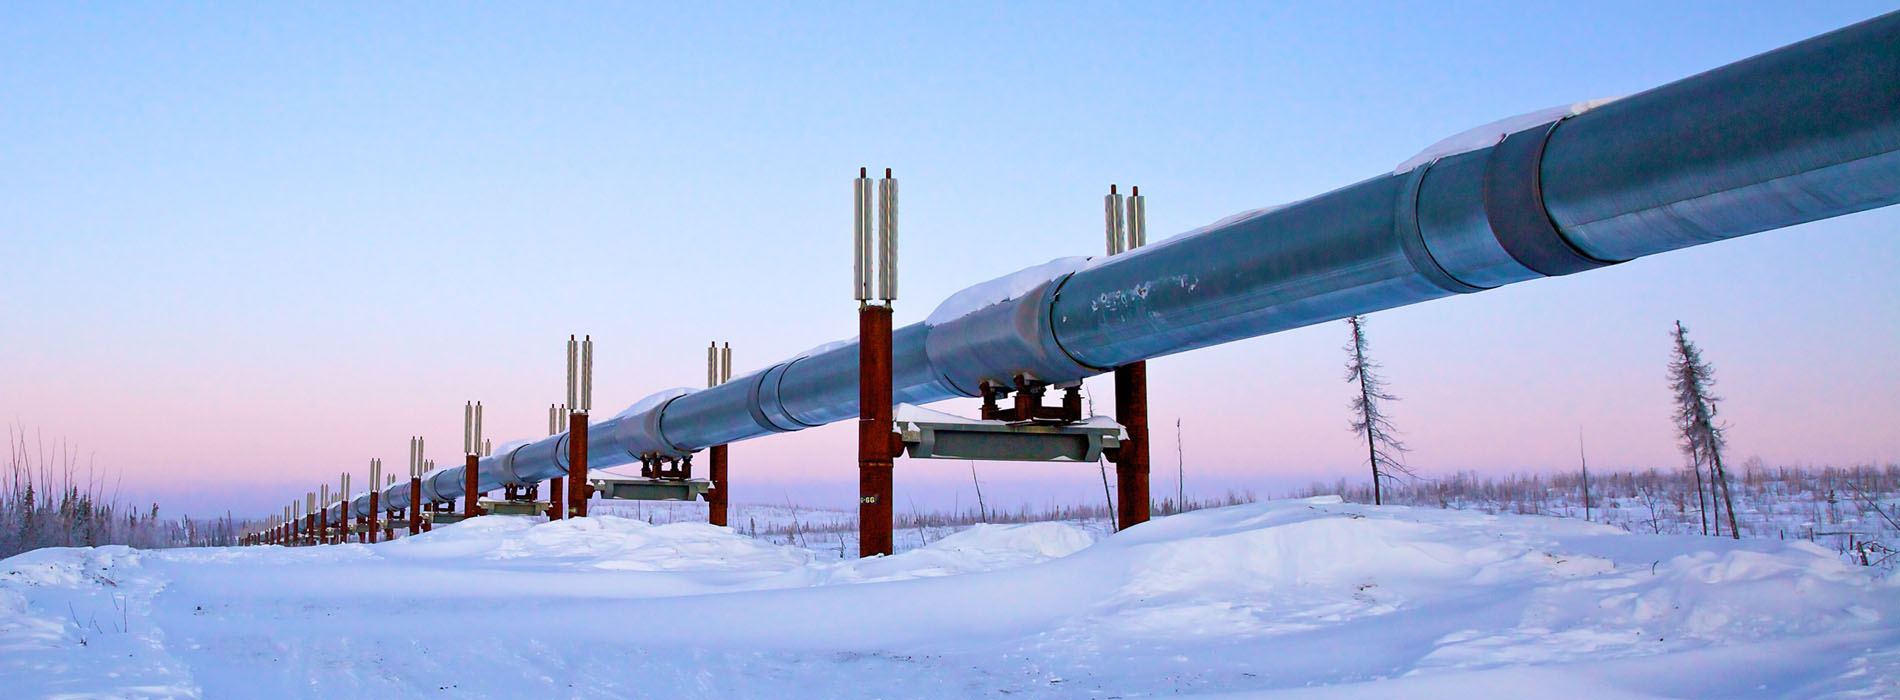 Artic pipeline